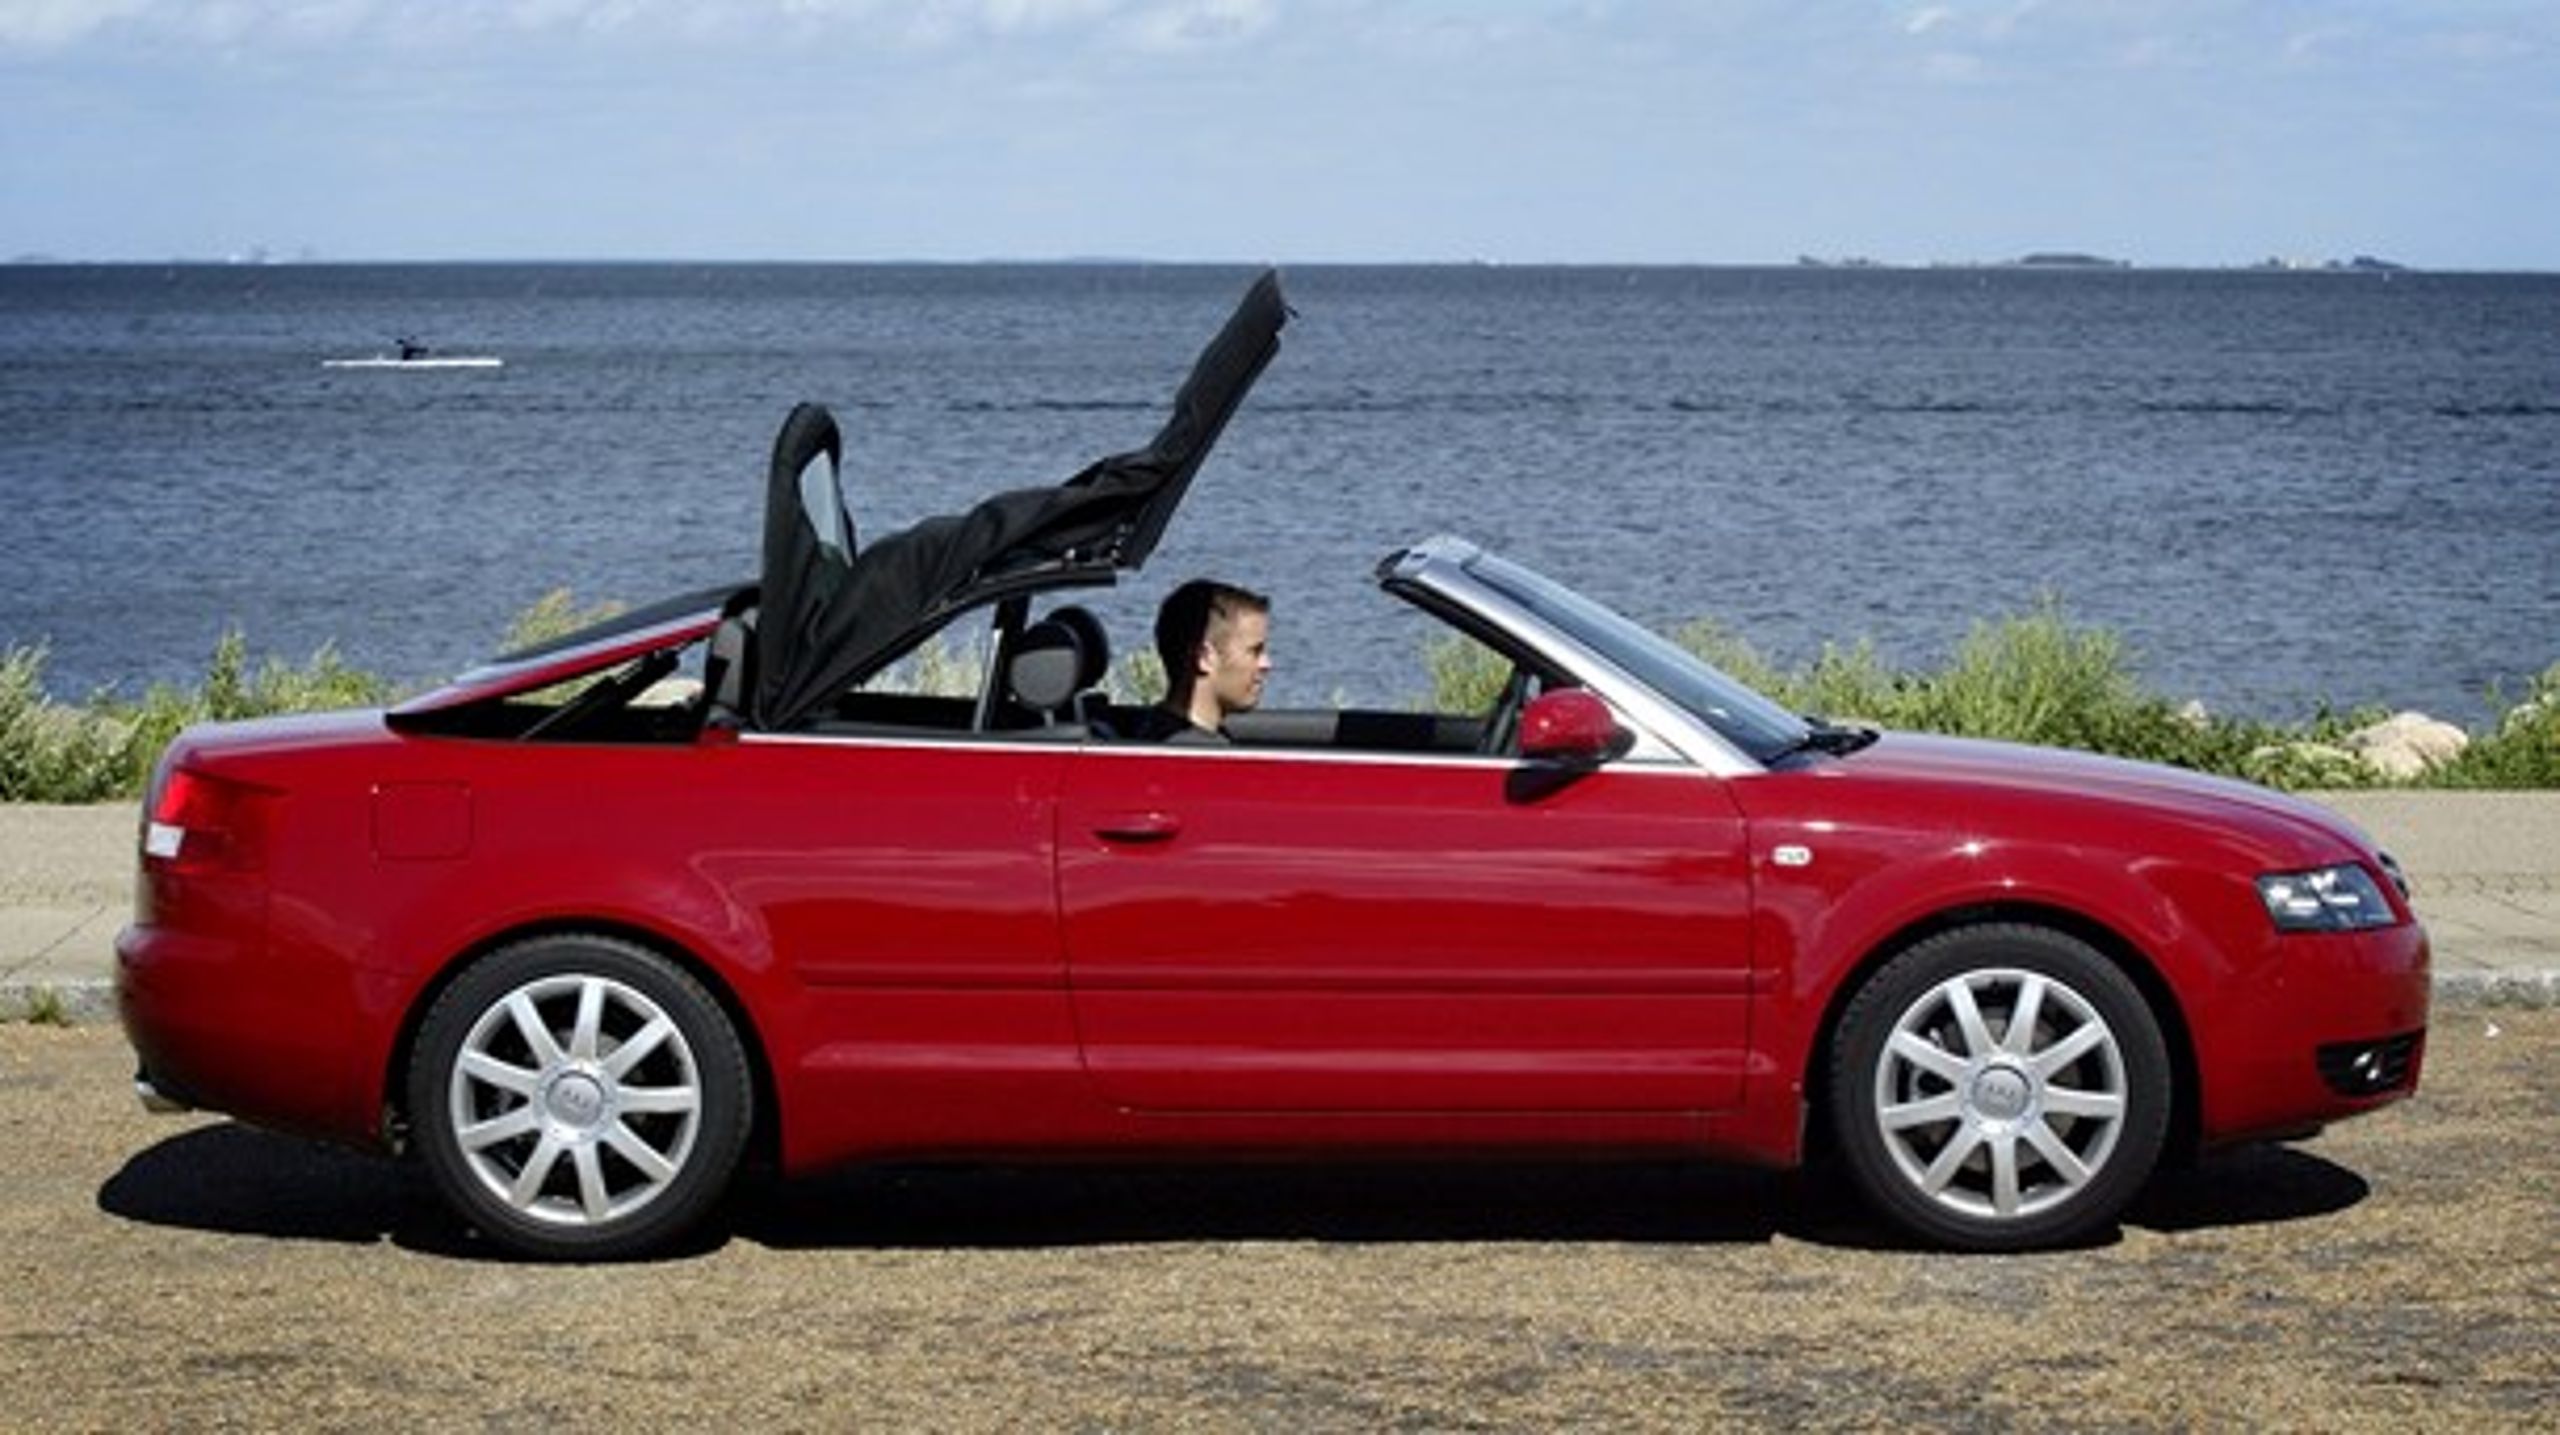 Audi er blandt de bilmærker, der aktivt benytter et smuthul i loven til at undgå at betale registreringsafgift